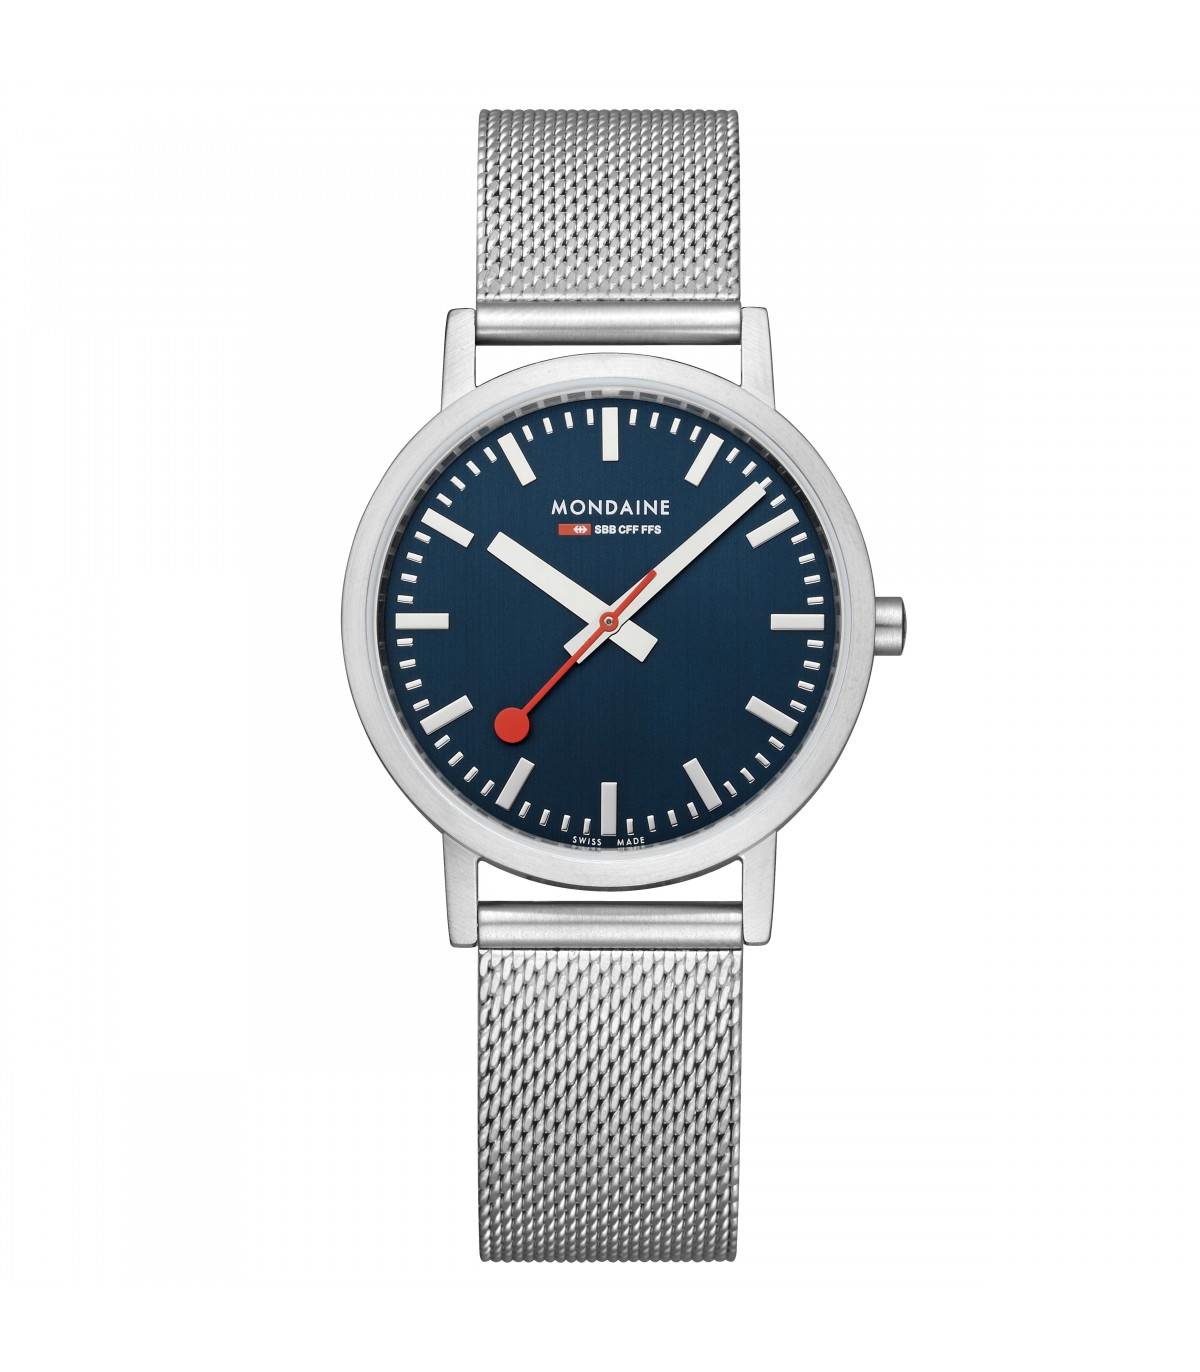 Mondaine classic Blu horloge M6603031440SBJ